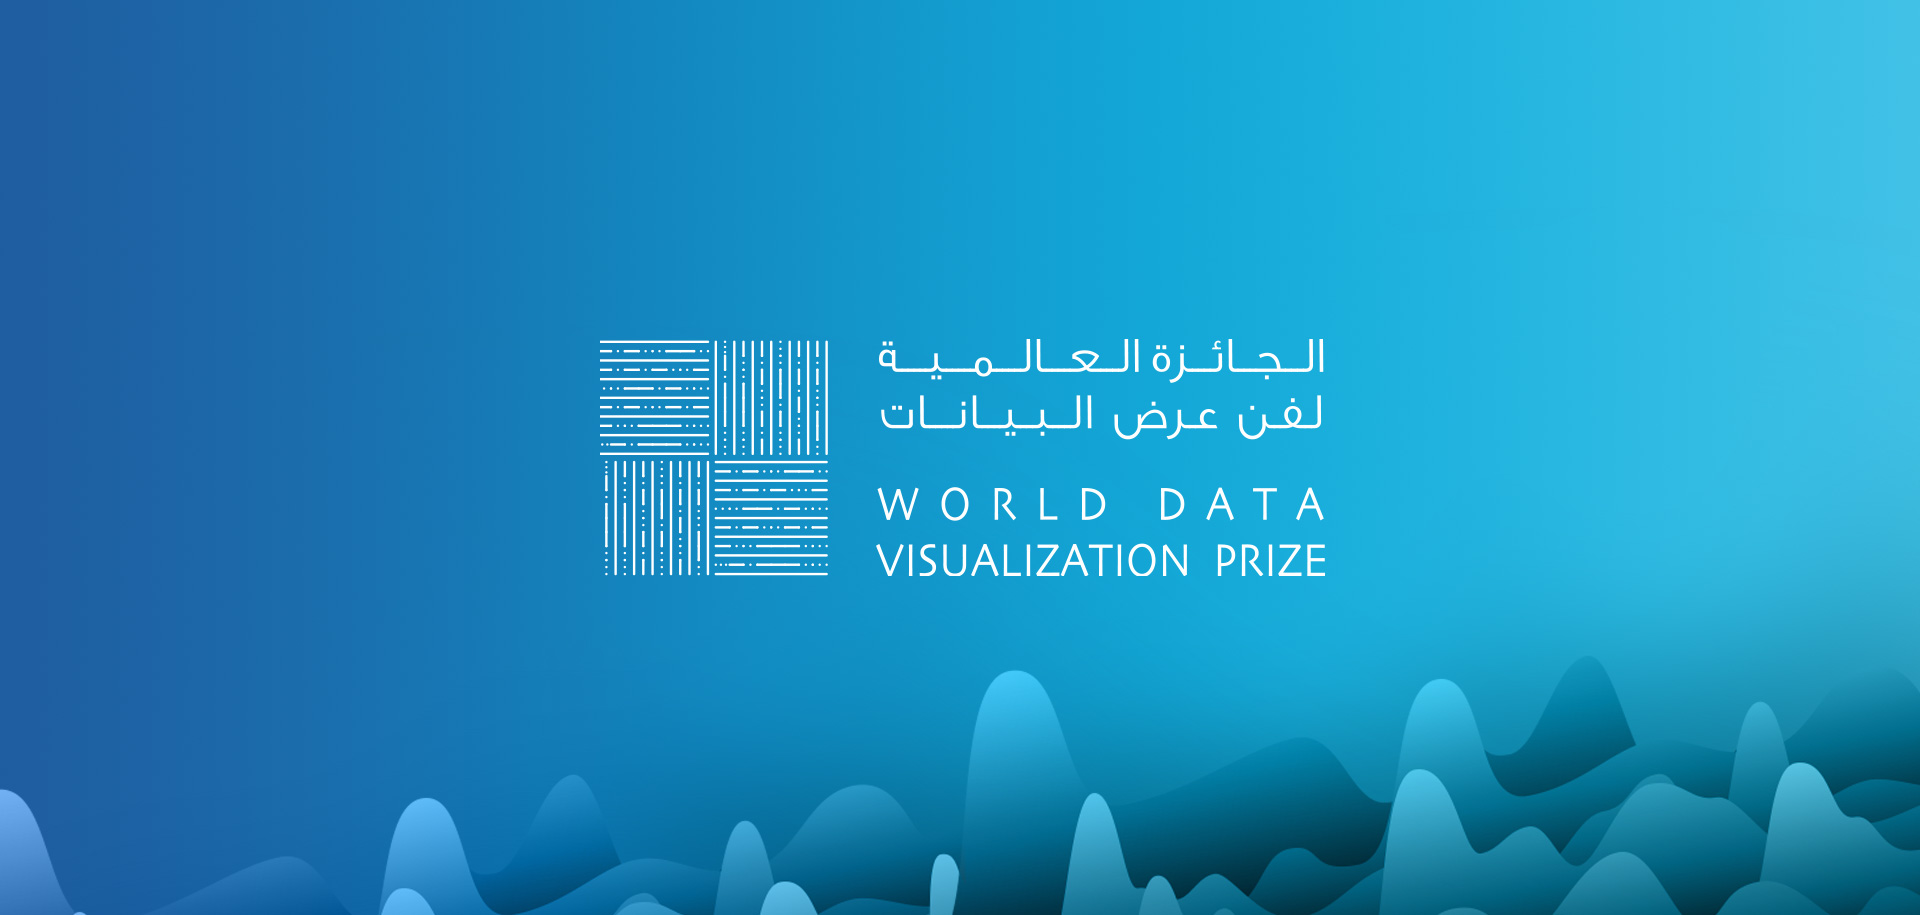 World Data Visualization Prize